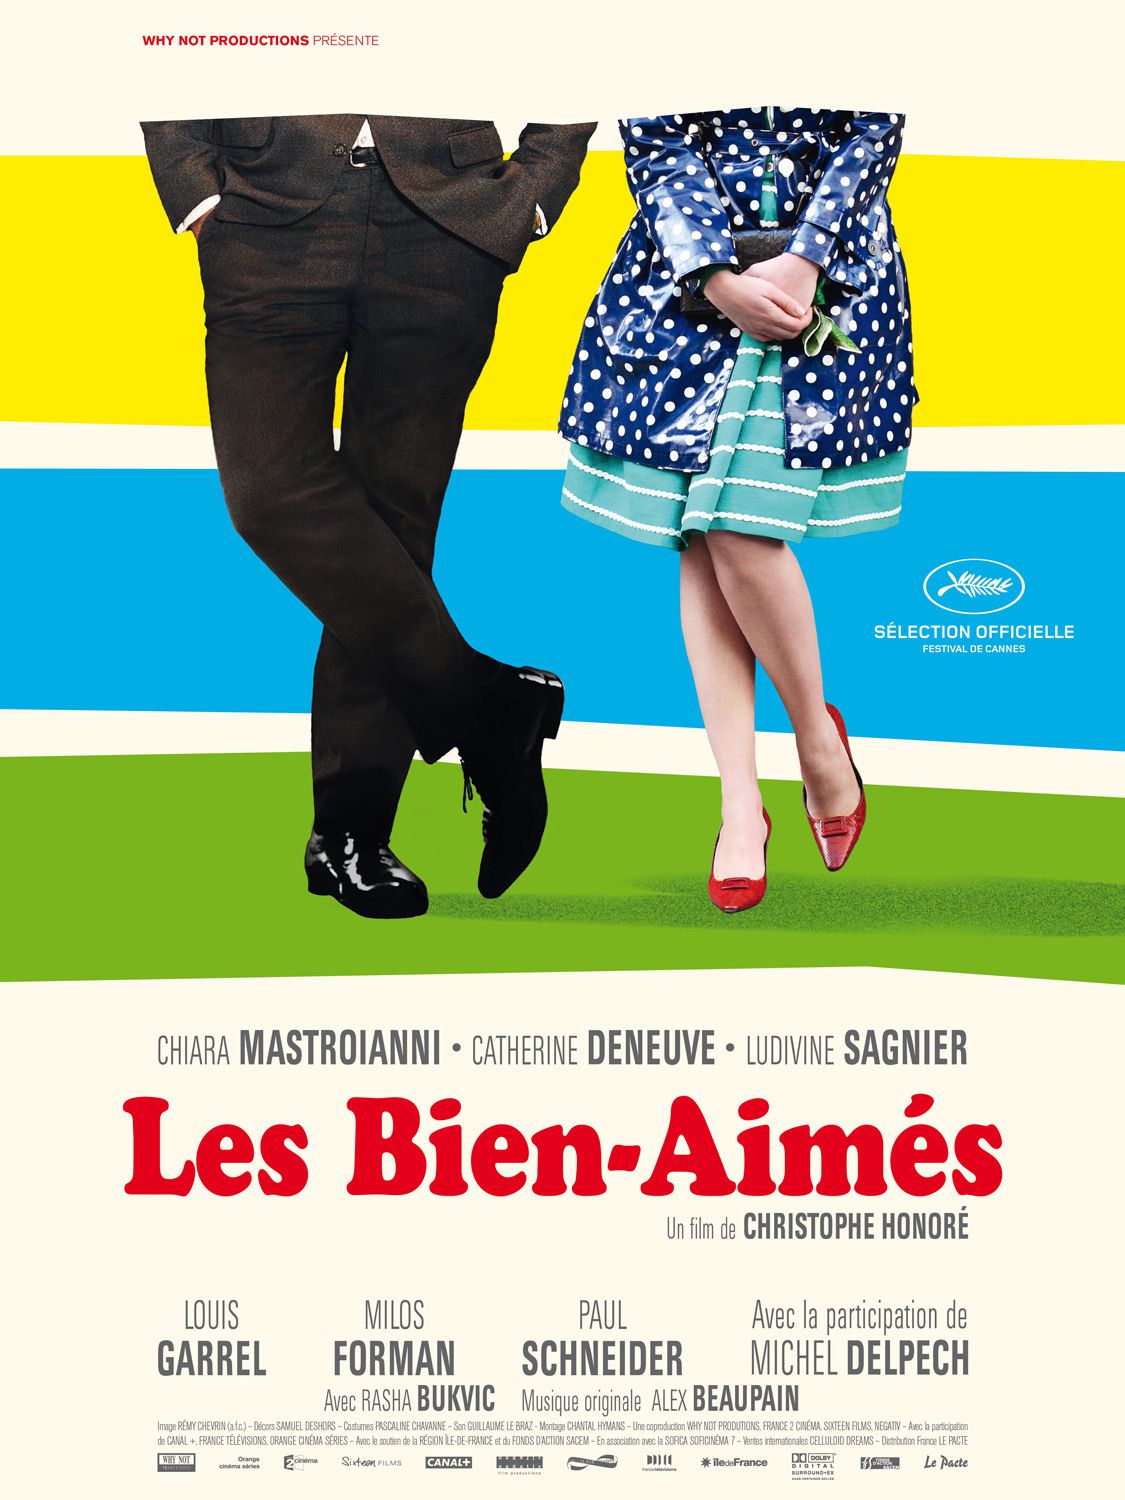 Les Bien-Aimés - Film (2011) streaming VF gratuit complet